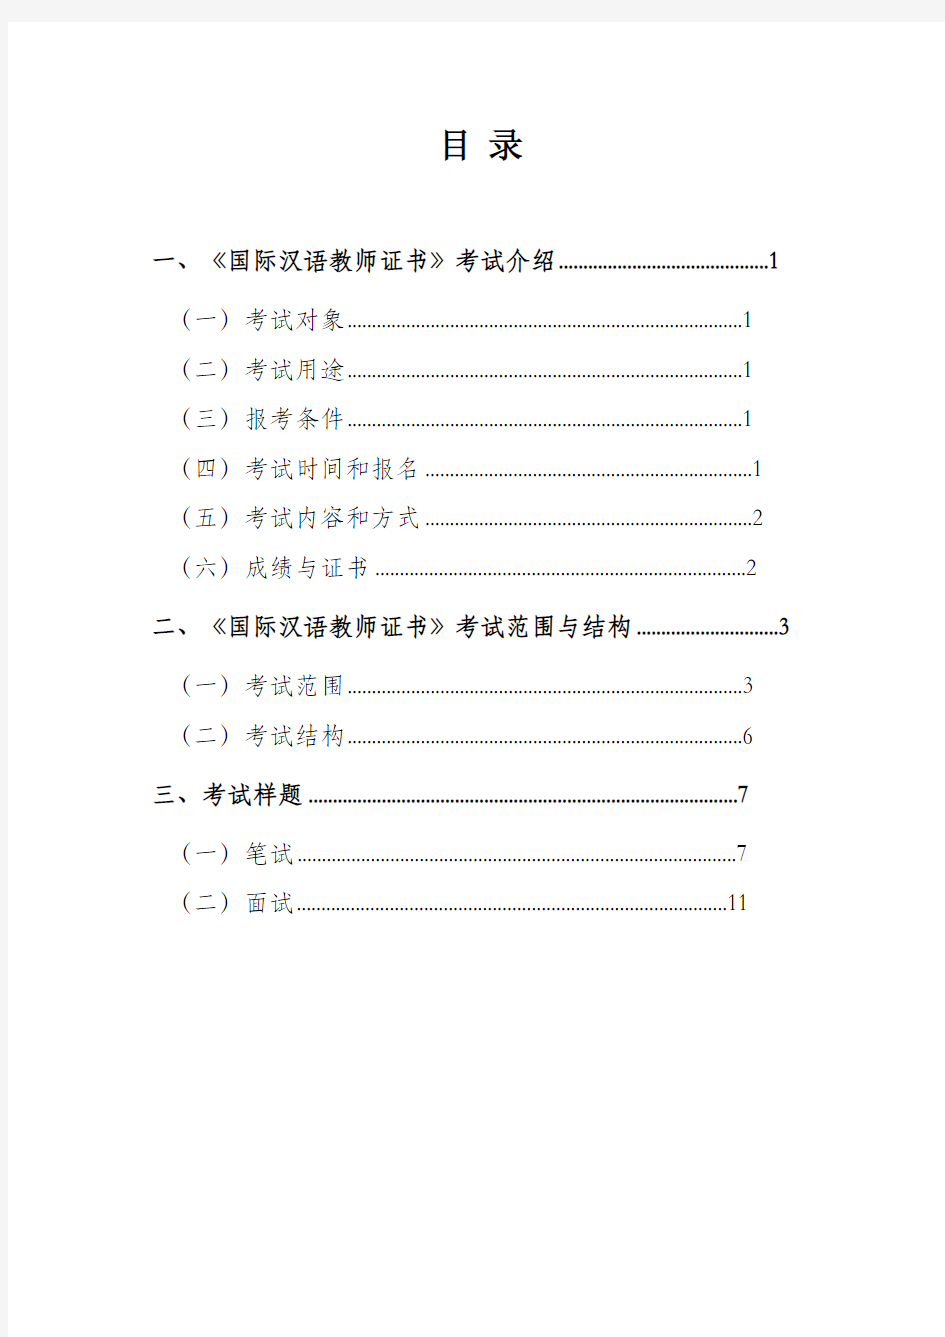 1：国际汉语教师资格考试大纲(试行) (1)